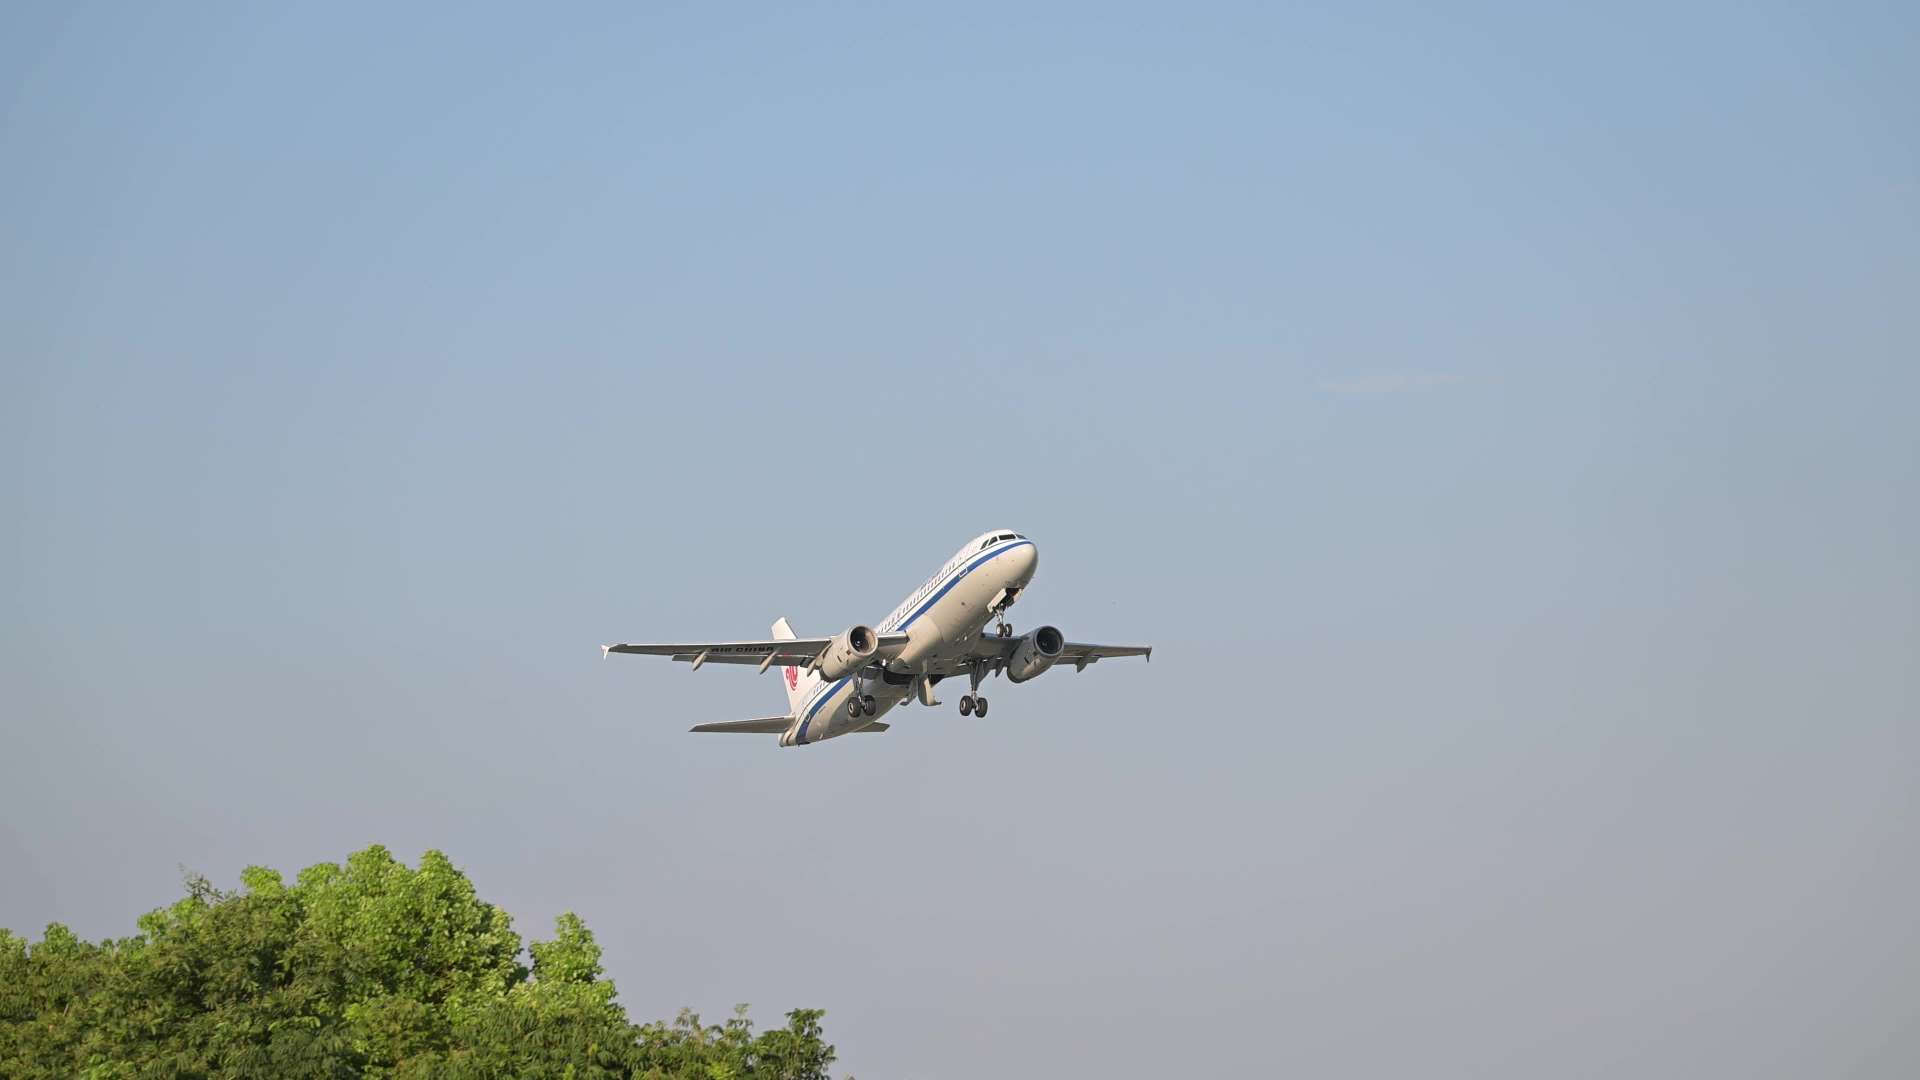 萧山机场-幸福翼公园-飞机起飞